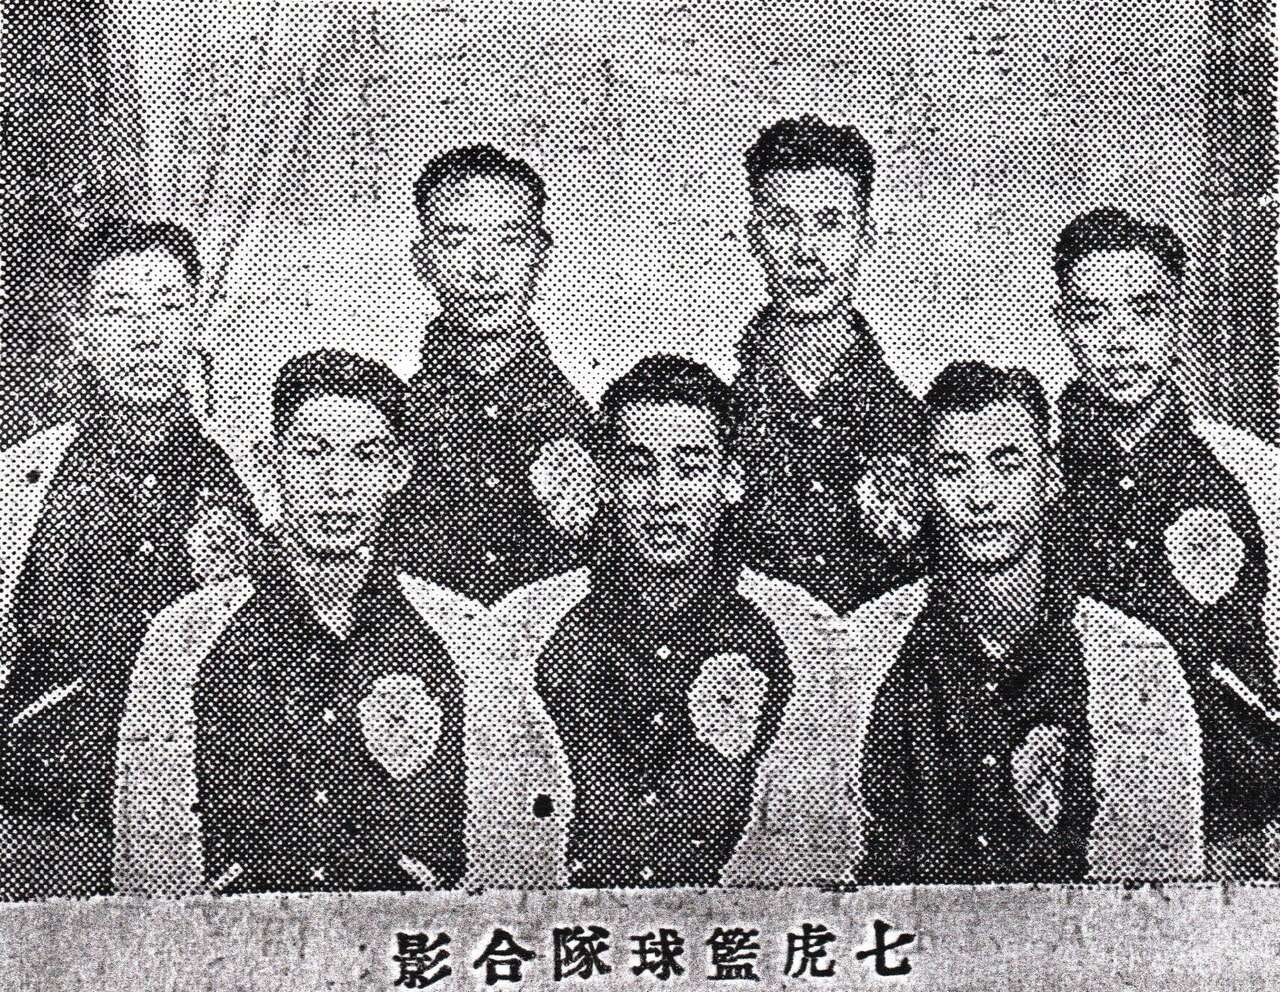 七虎隊早期隊員有相片中前排左起王毅軍、霍劍平、毛家榮、後排左起鄭大光、王士選。官方提供